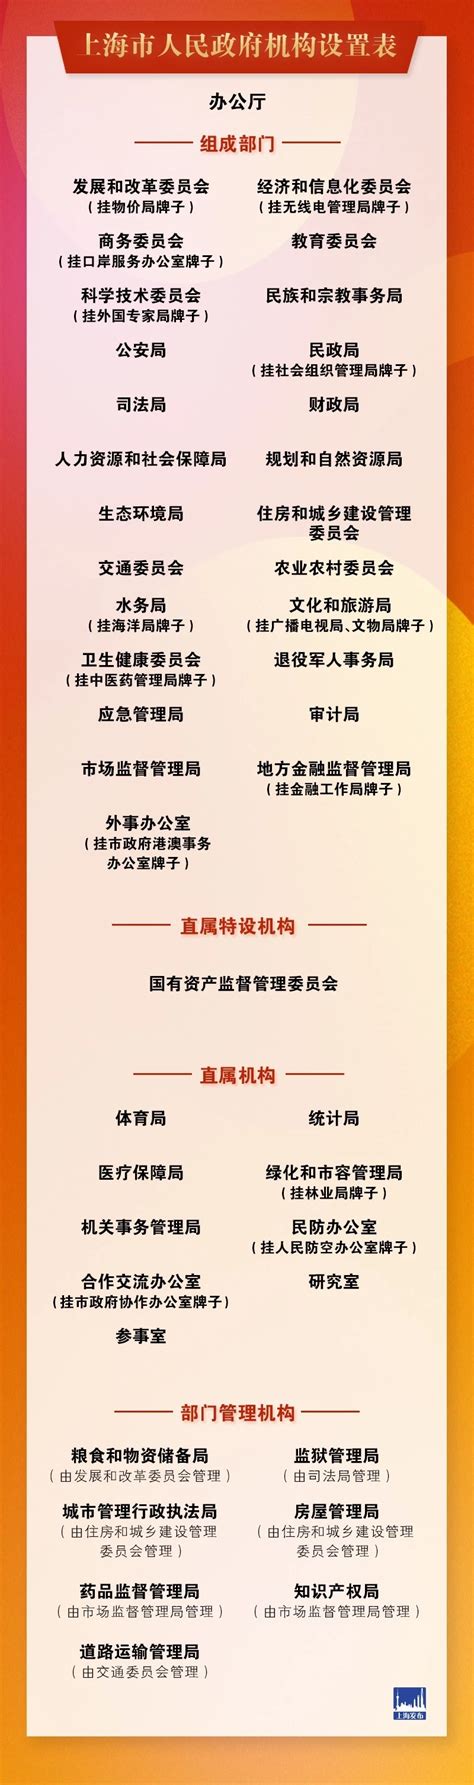 上海行政区划图2018【相关词_ 2018上海市行政区划图】 - 随意优惠券